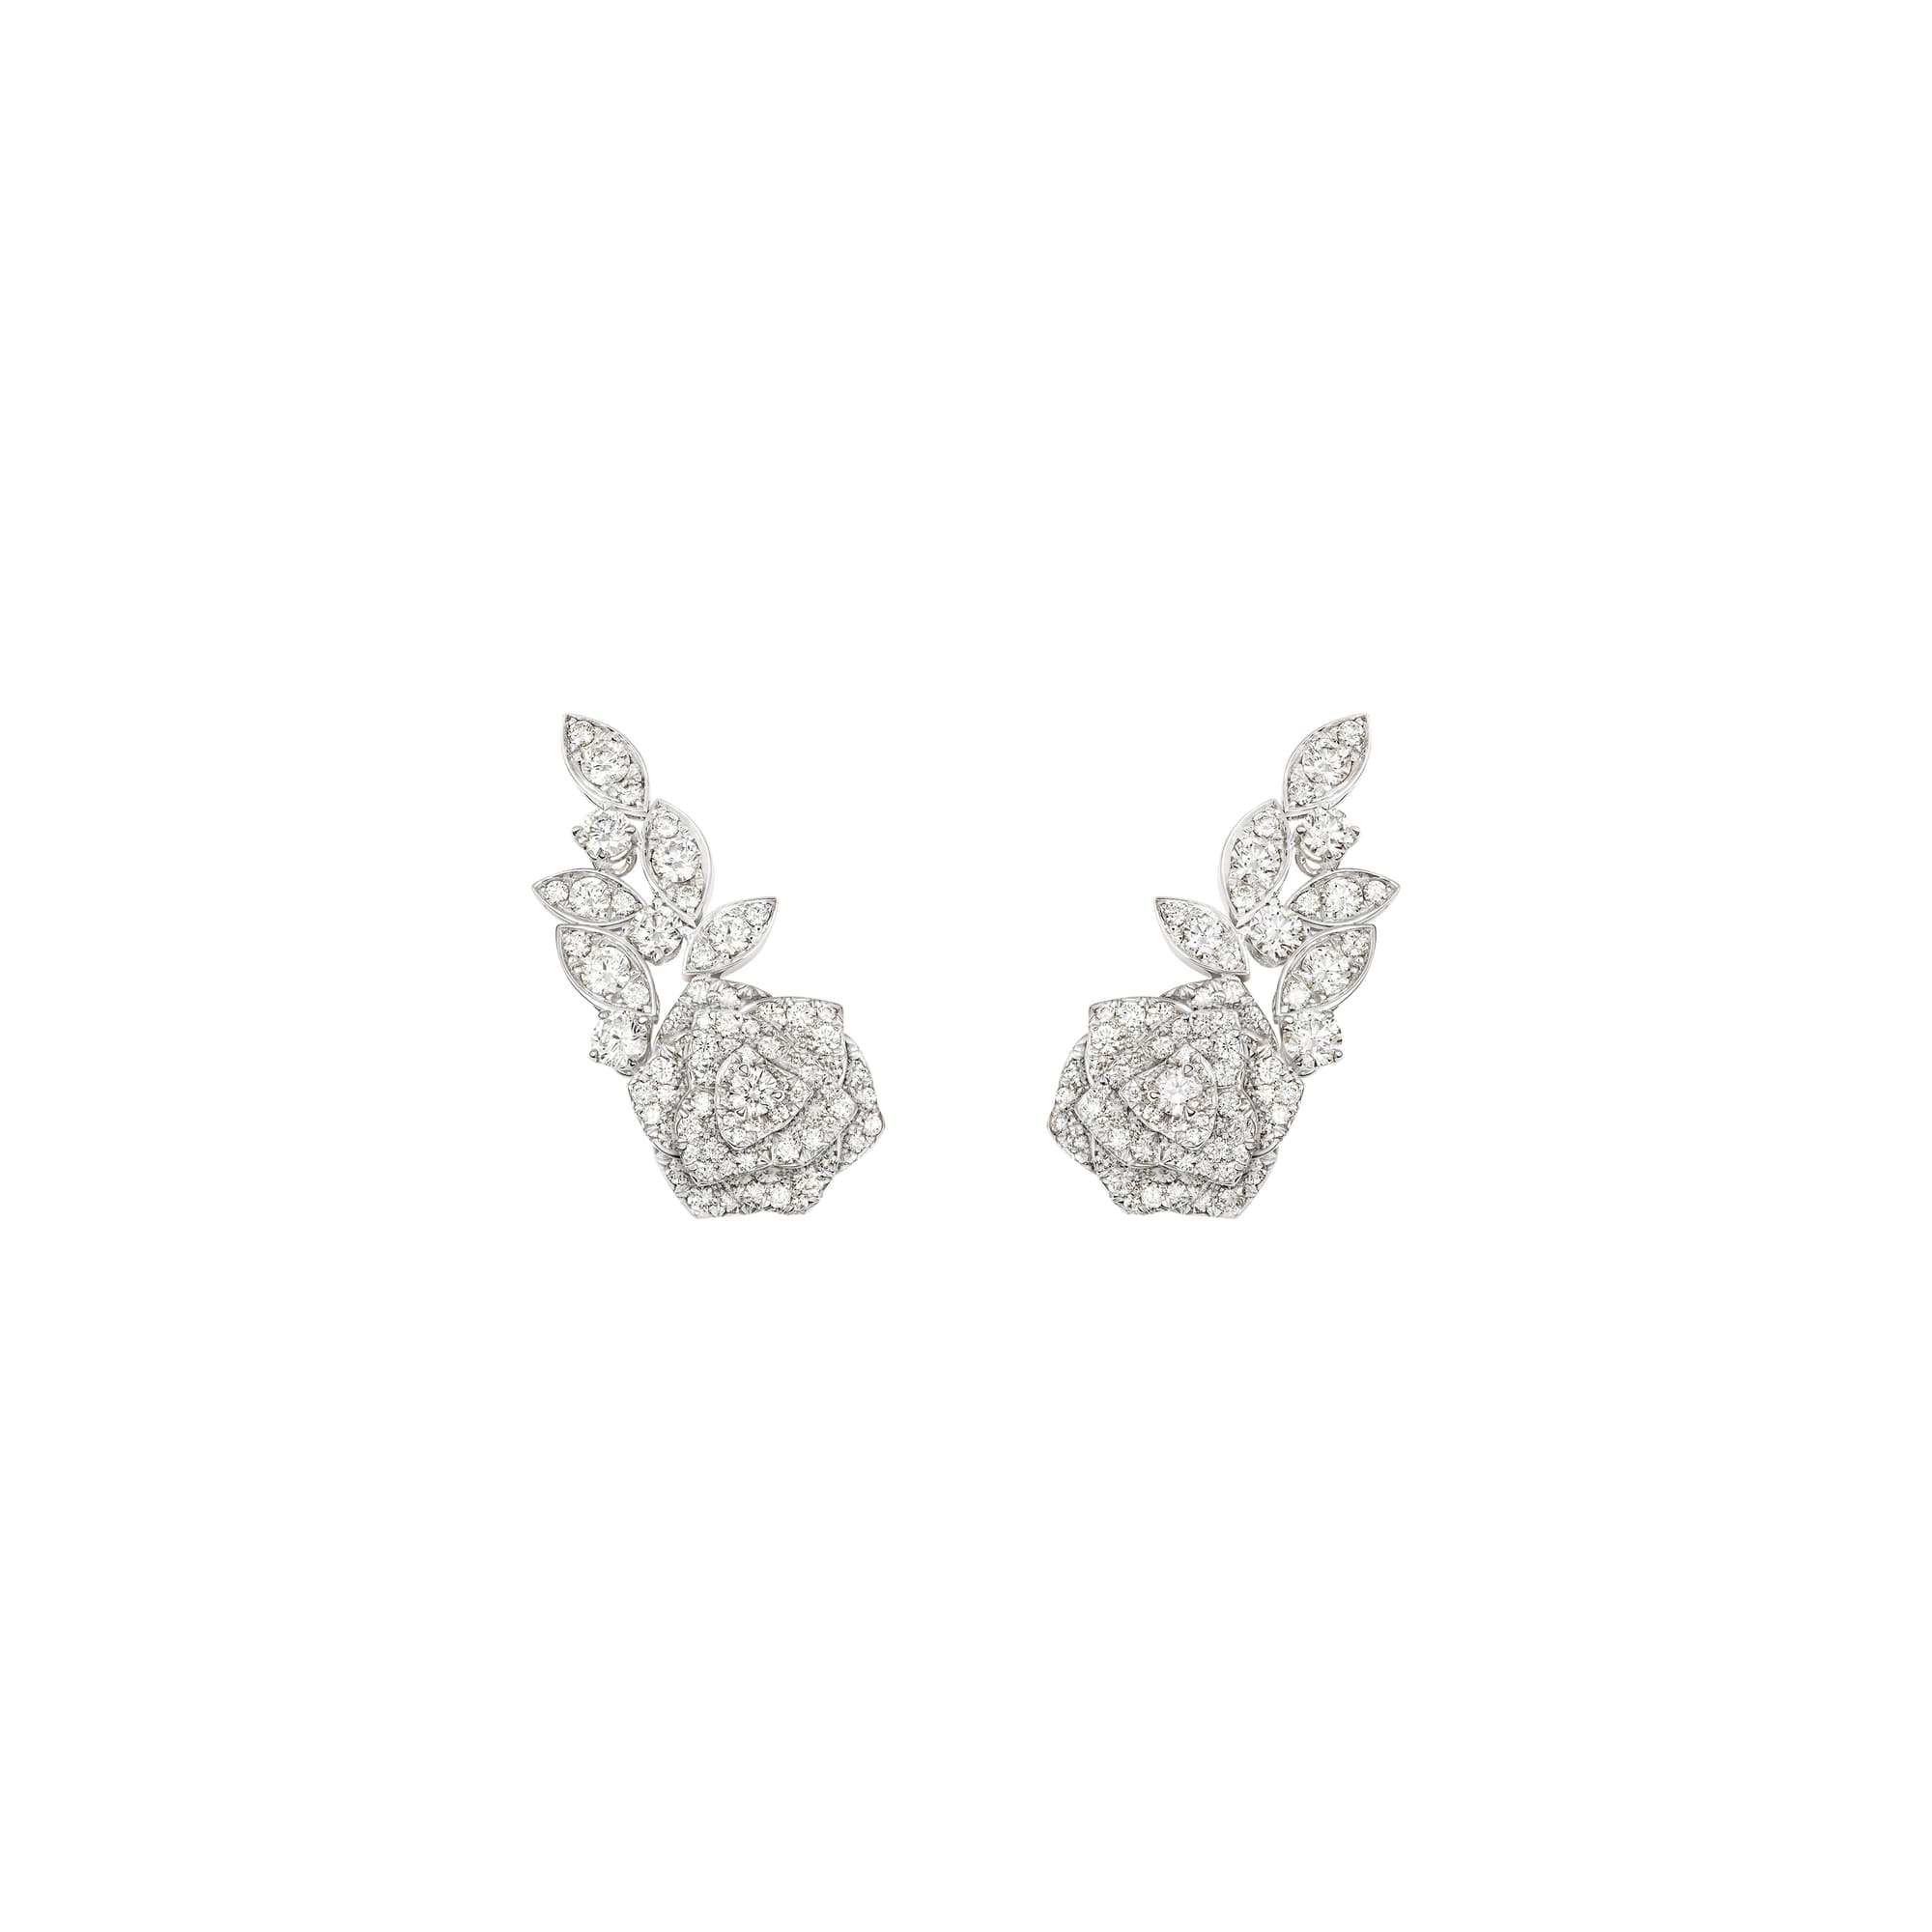 White gold Diamond Earrings G38U0076 - Piaget Luxury Jewelry Online